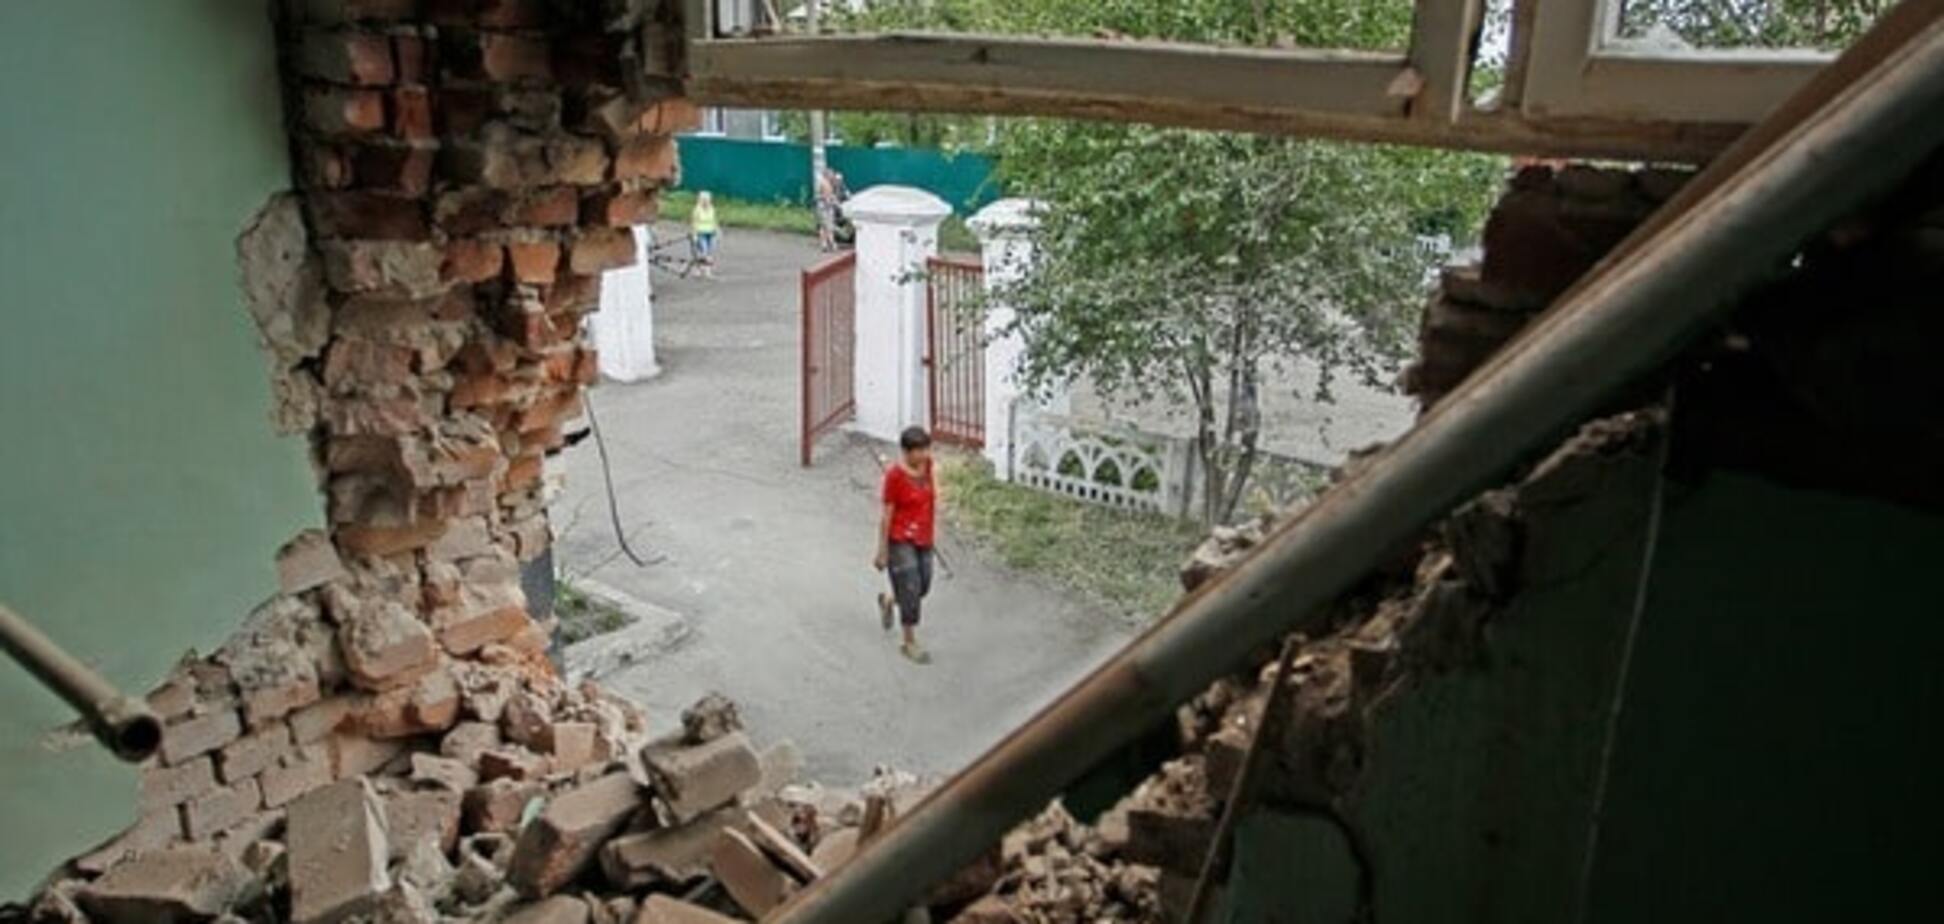 Разрушенный дом на Донбассе